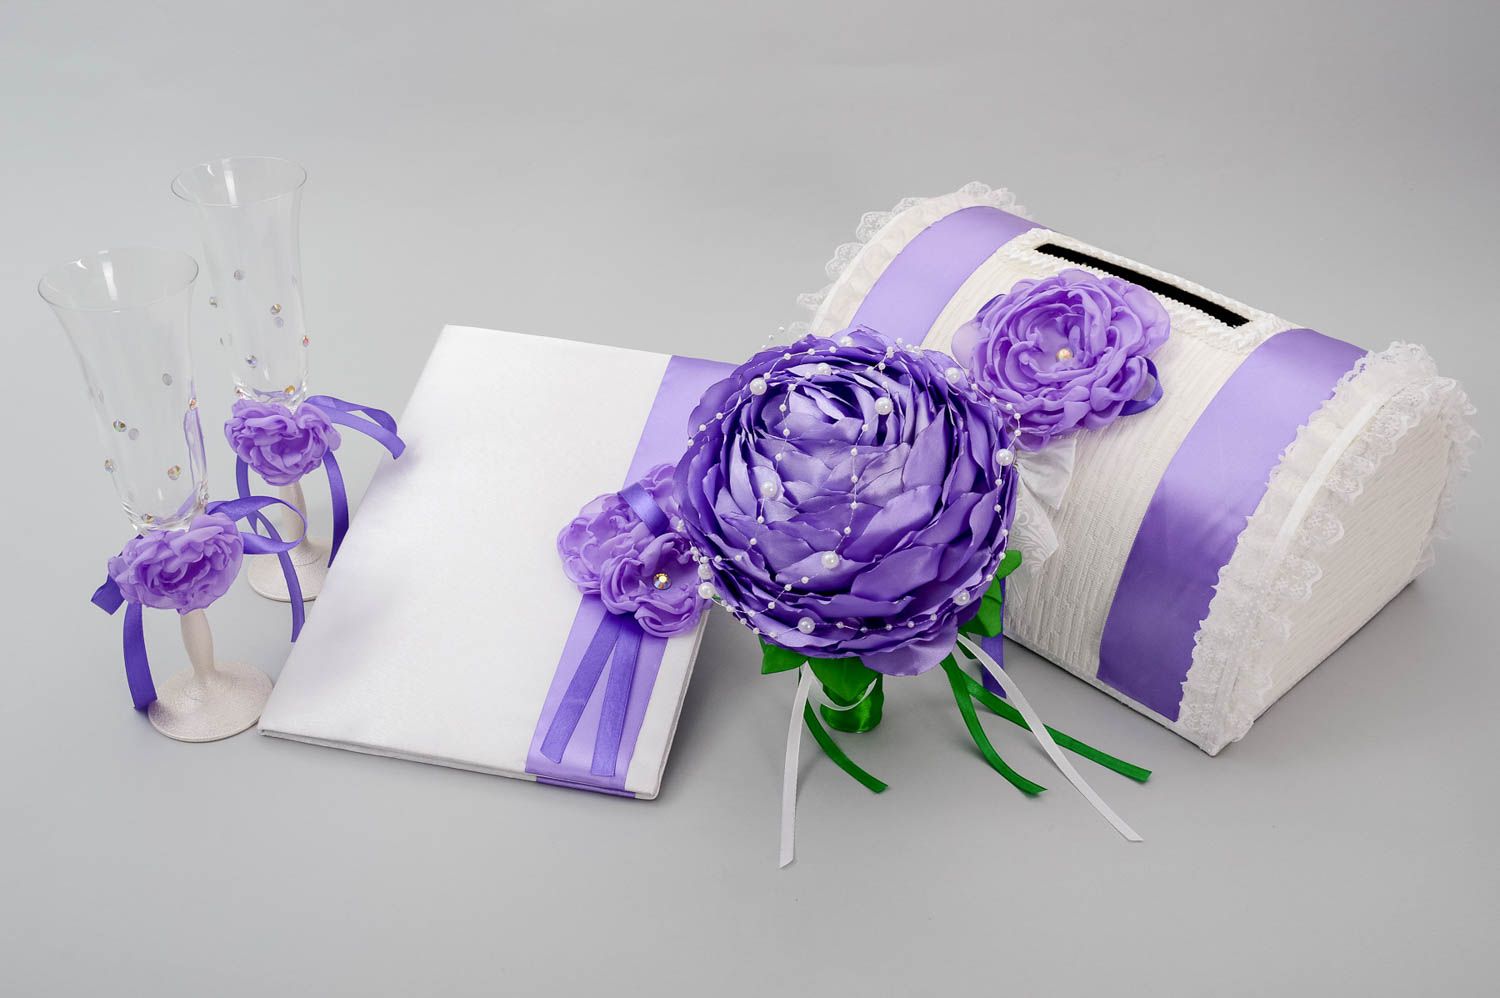 Accesorios para boda artesanales lilas elementos decorativos regalos originales foto 4